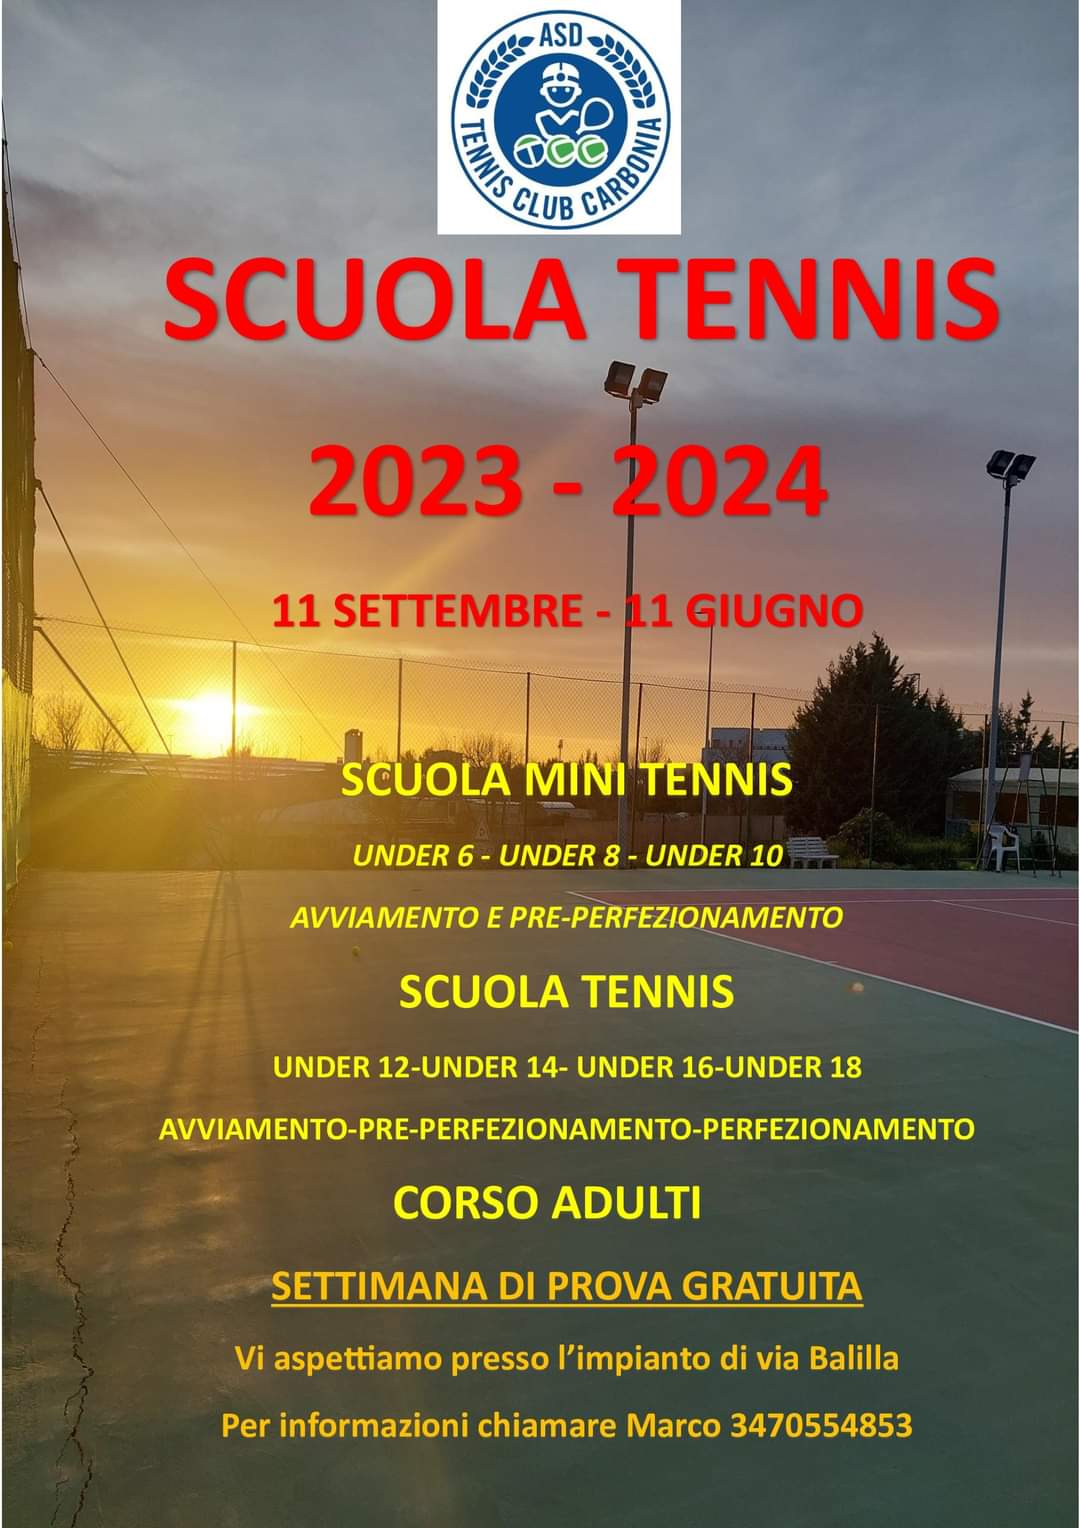 Scuola Tennis 2023 – 2024